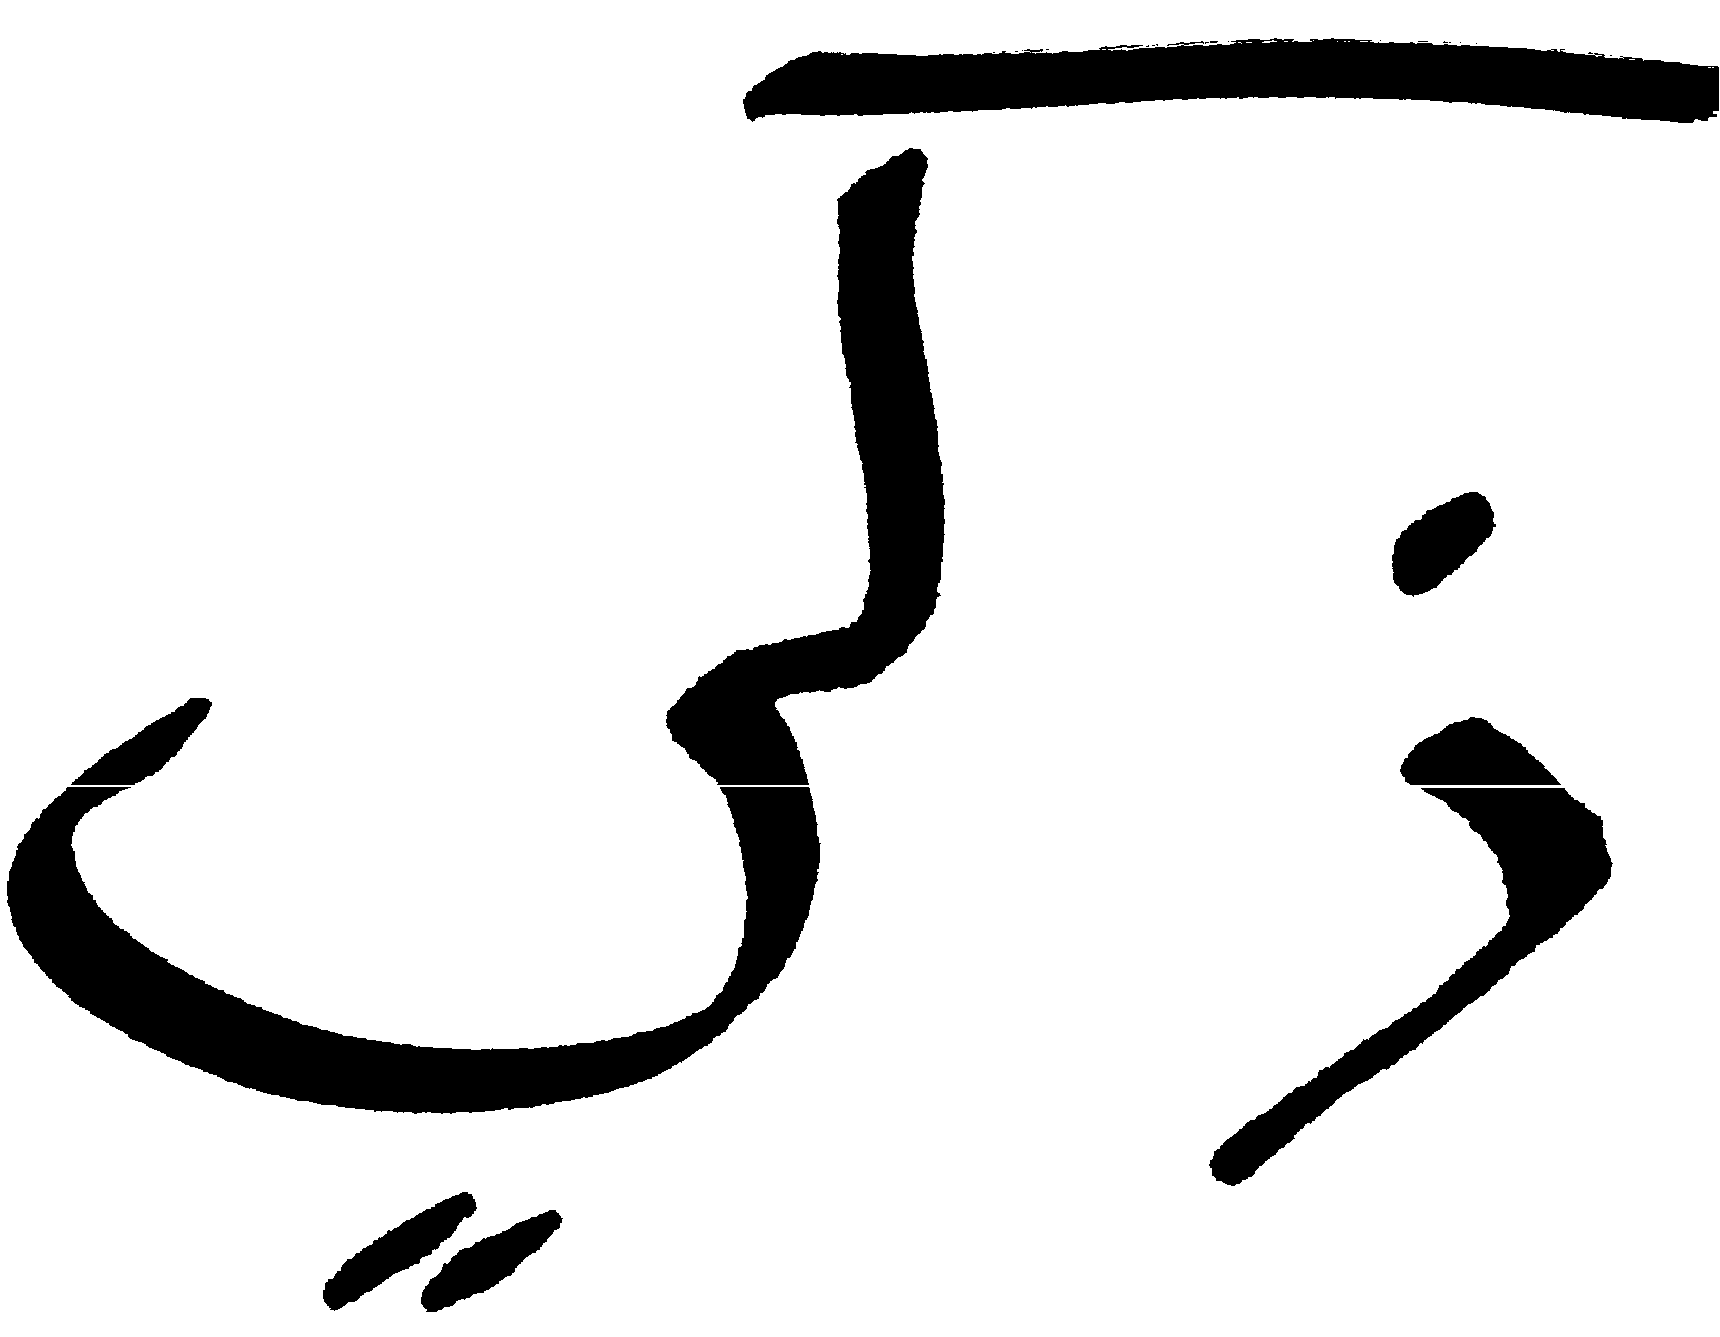 Signature in Arabic